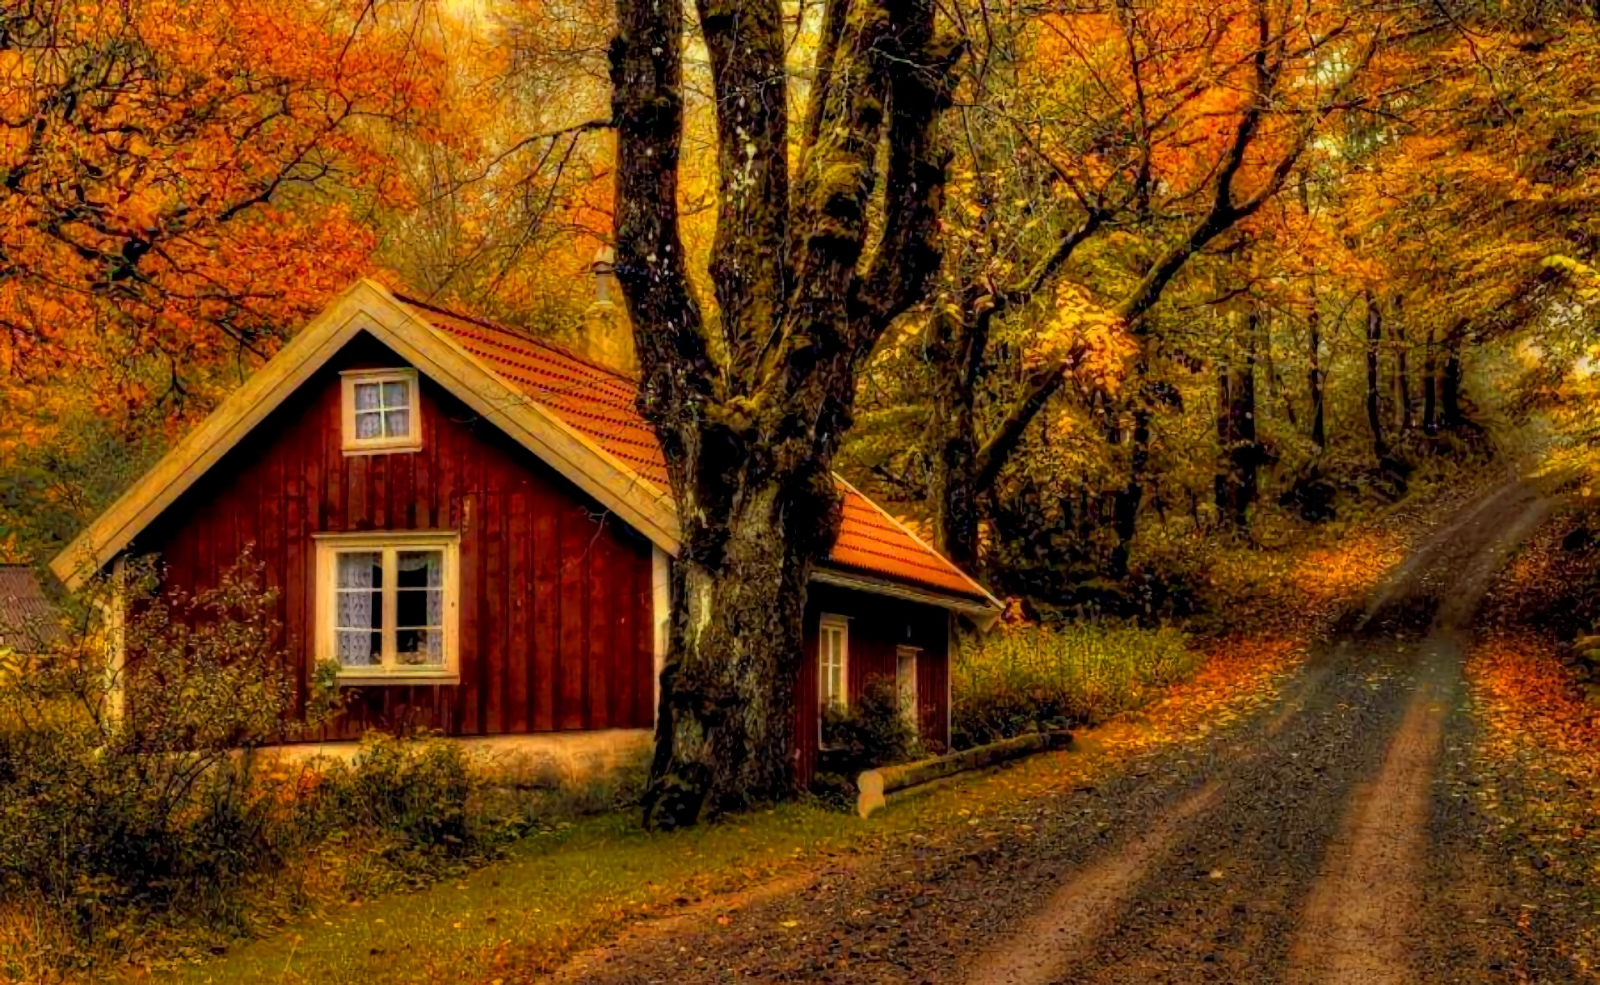 House on Autumn Road